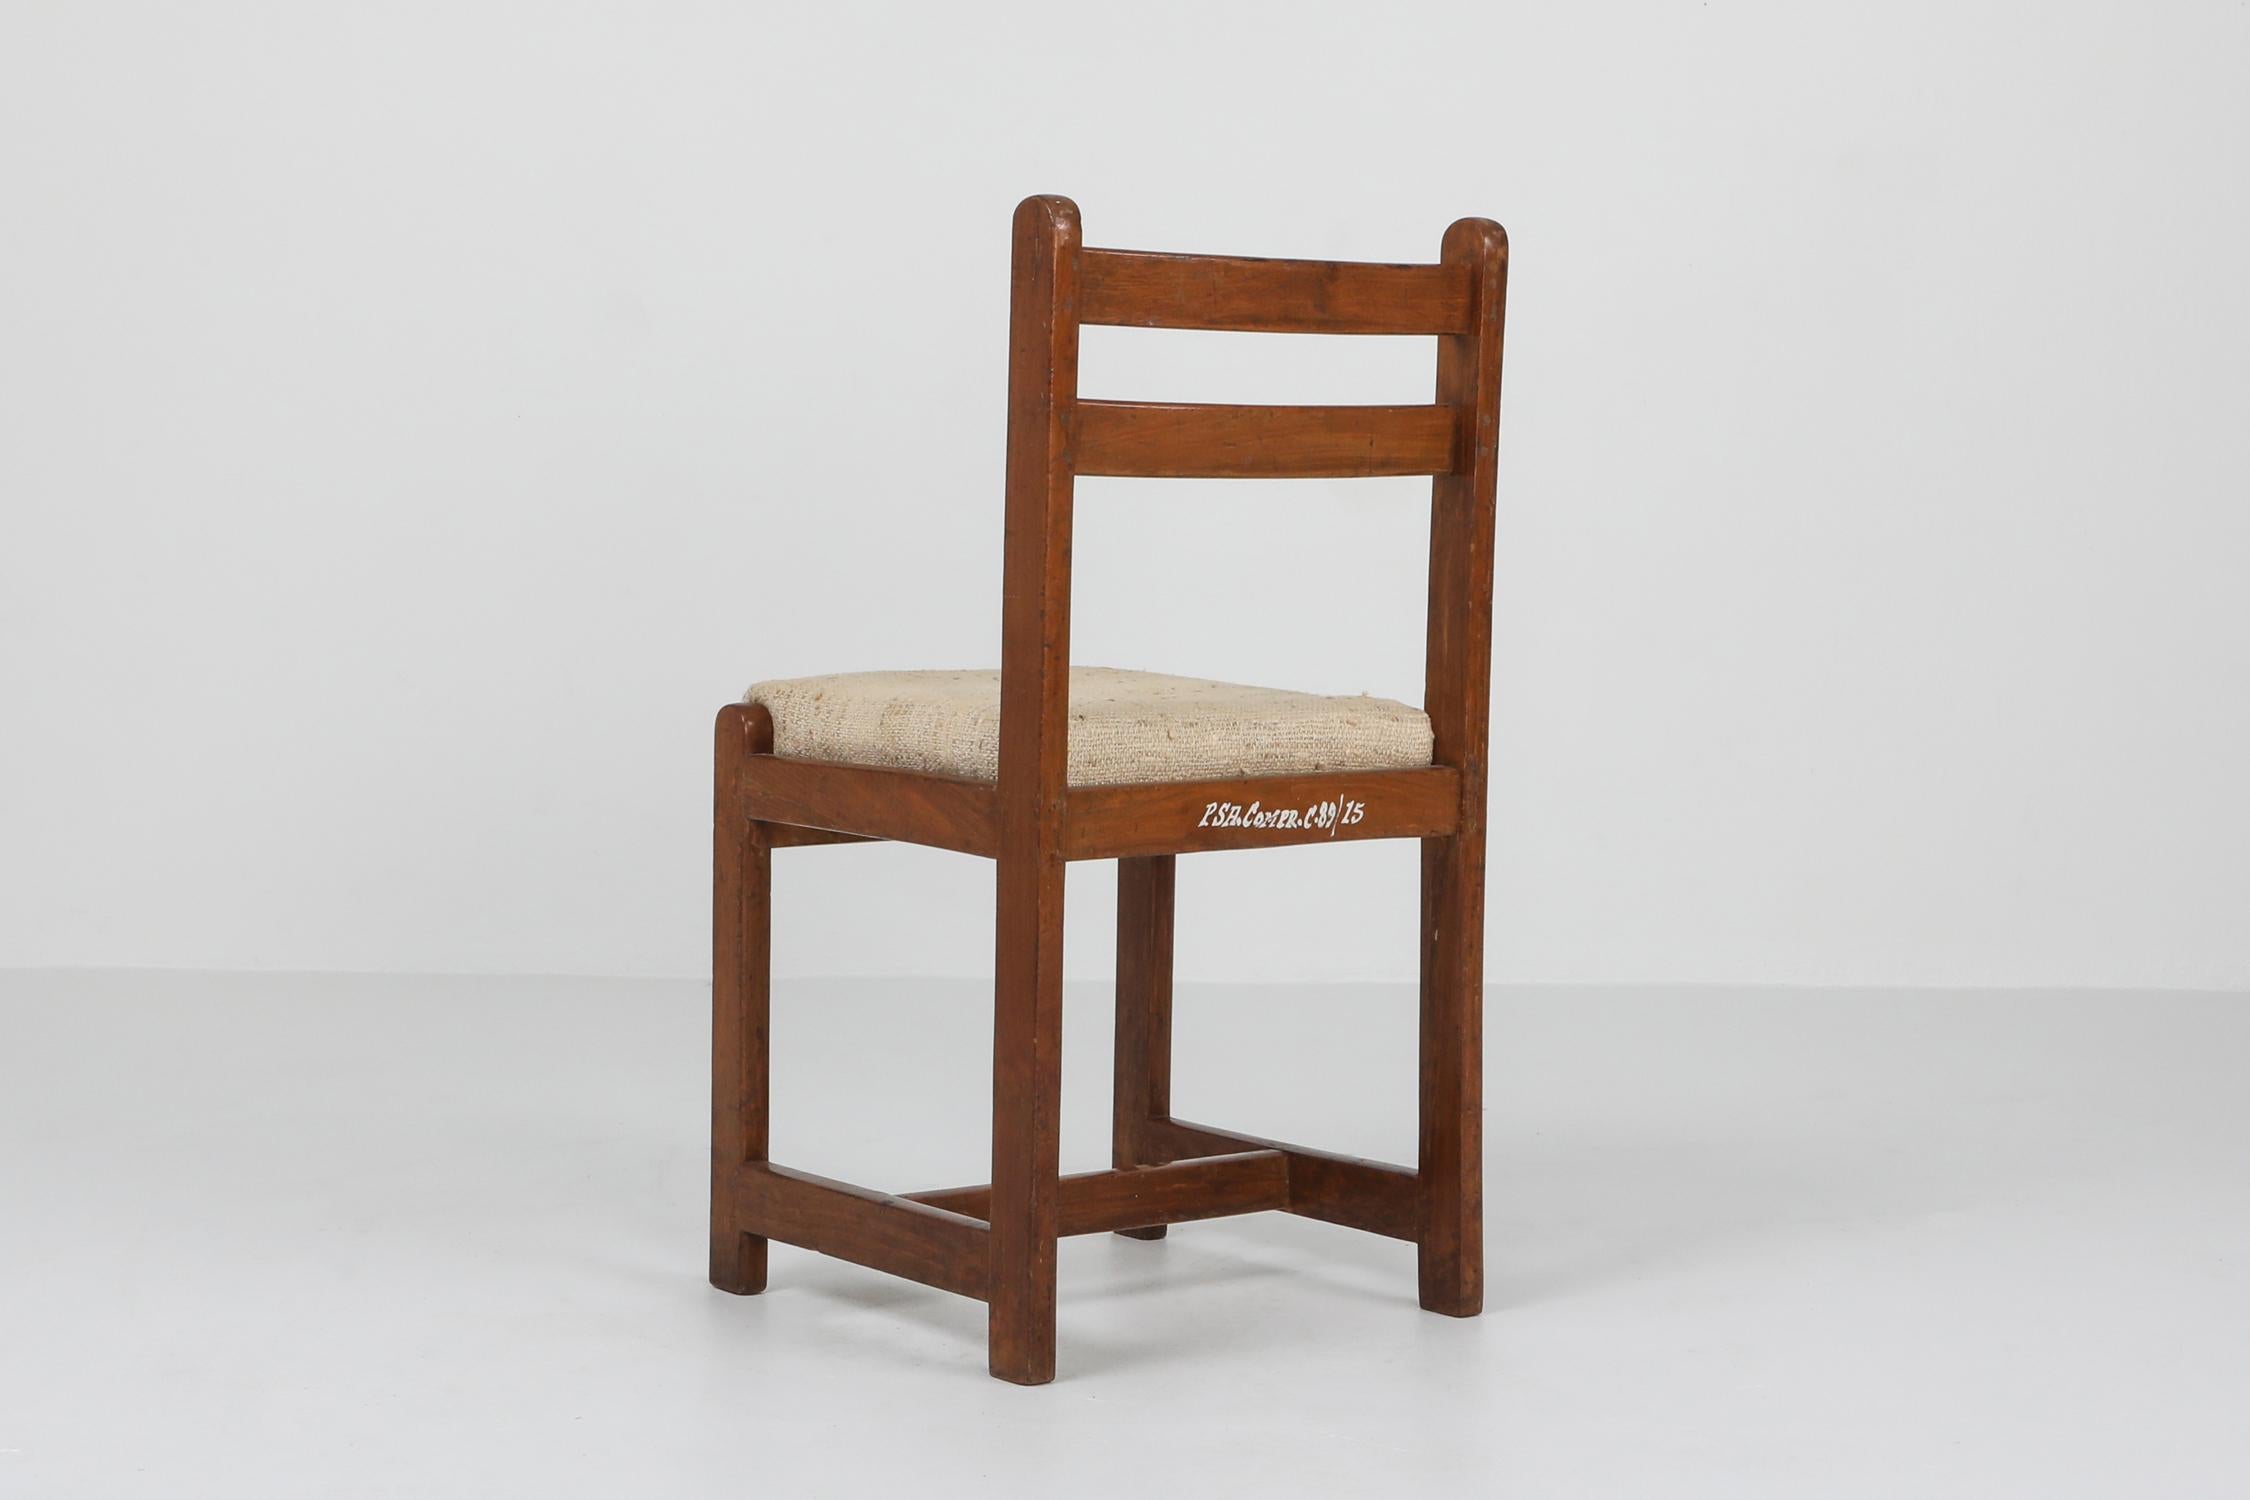 20th Century Pierre Jeanneret, Chandigarh Chair